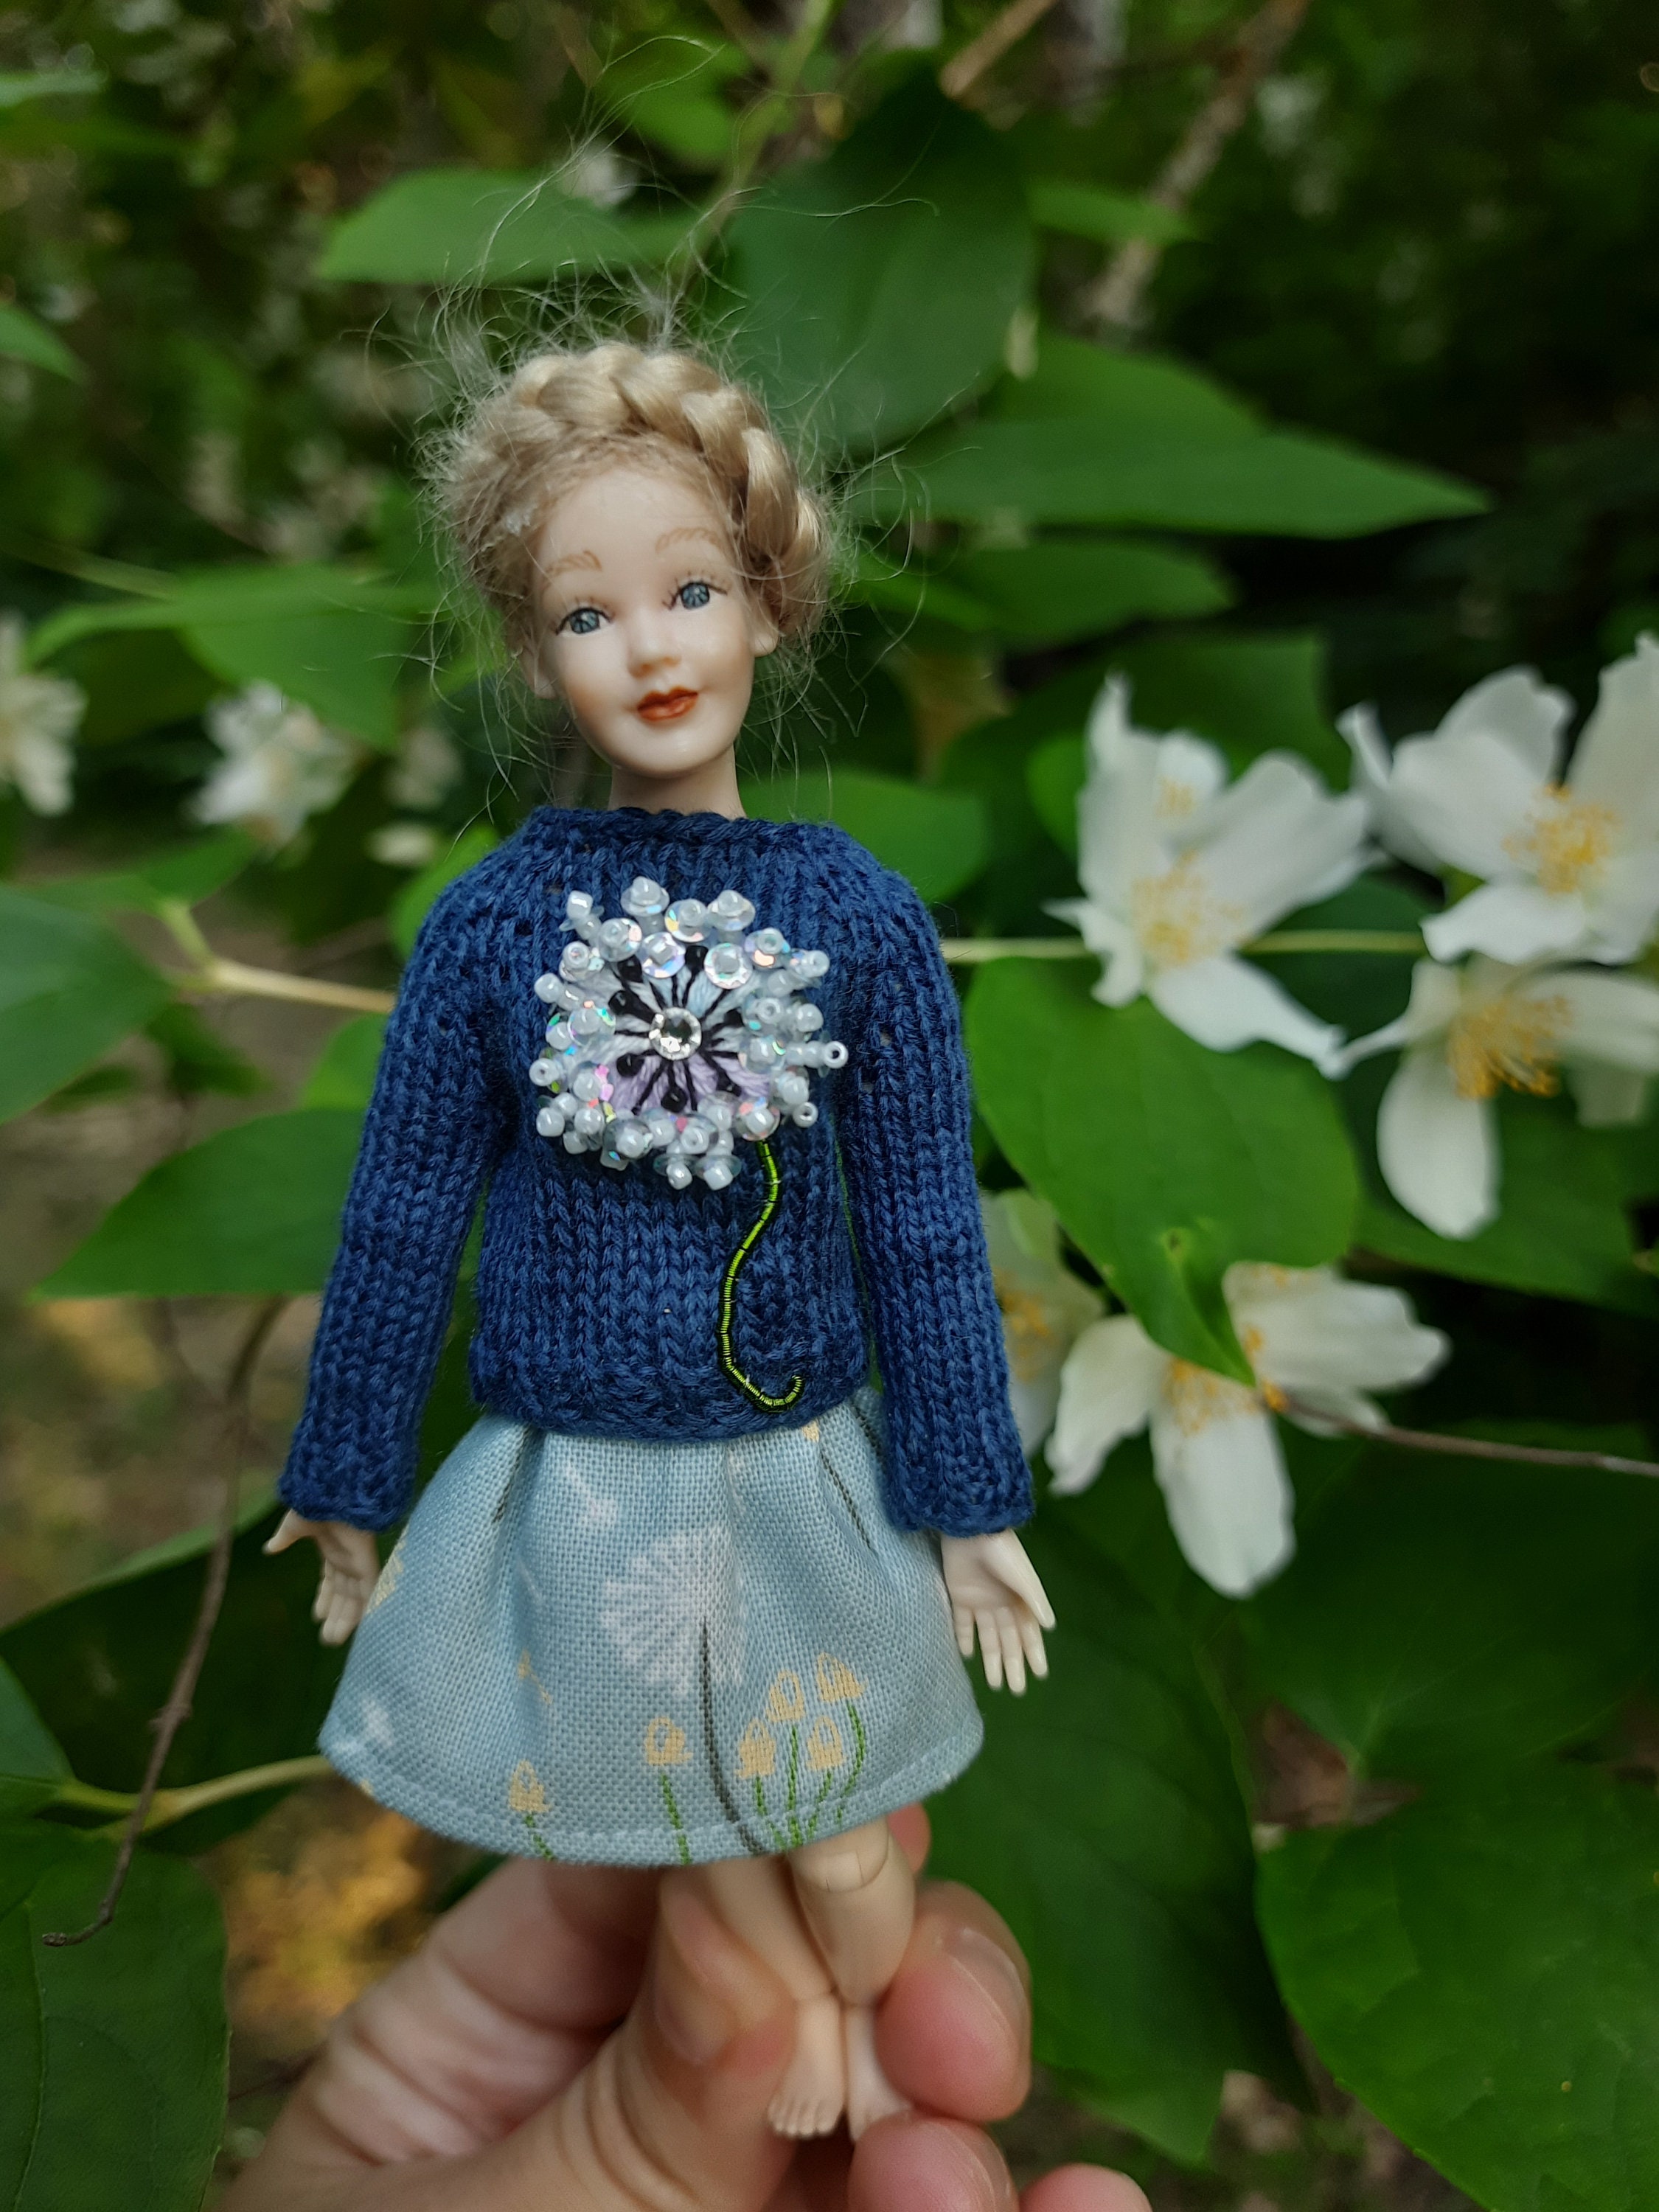 Mignonne petite poupée cousue à la main, robe bleue cheveux gingembre  échelle 1/12ème Jouet enfant inspiré Waldorf -  France